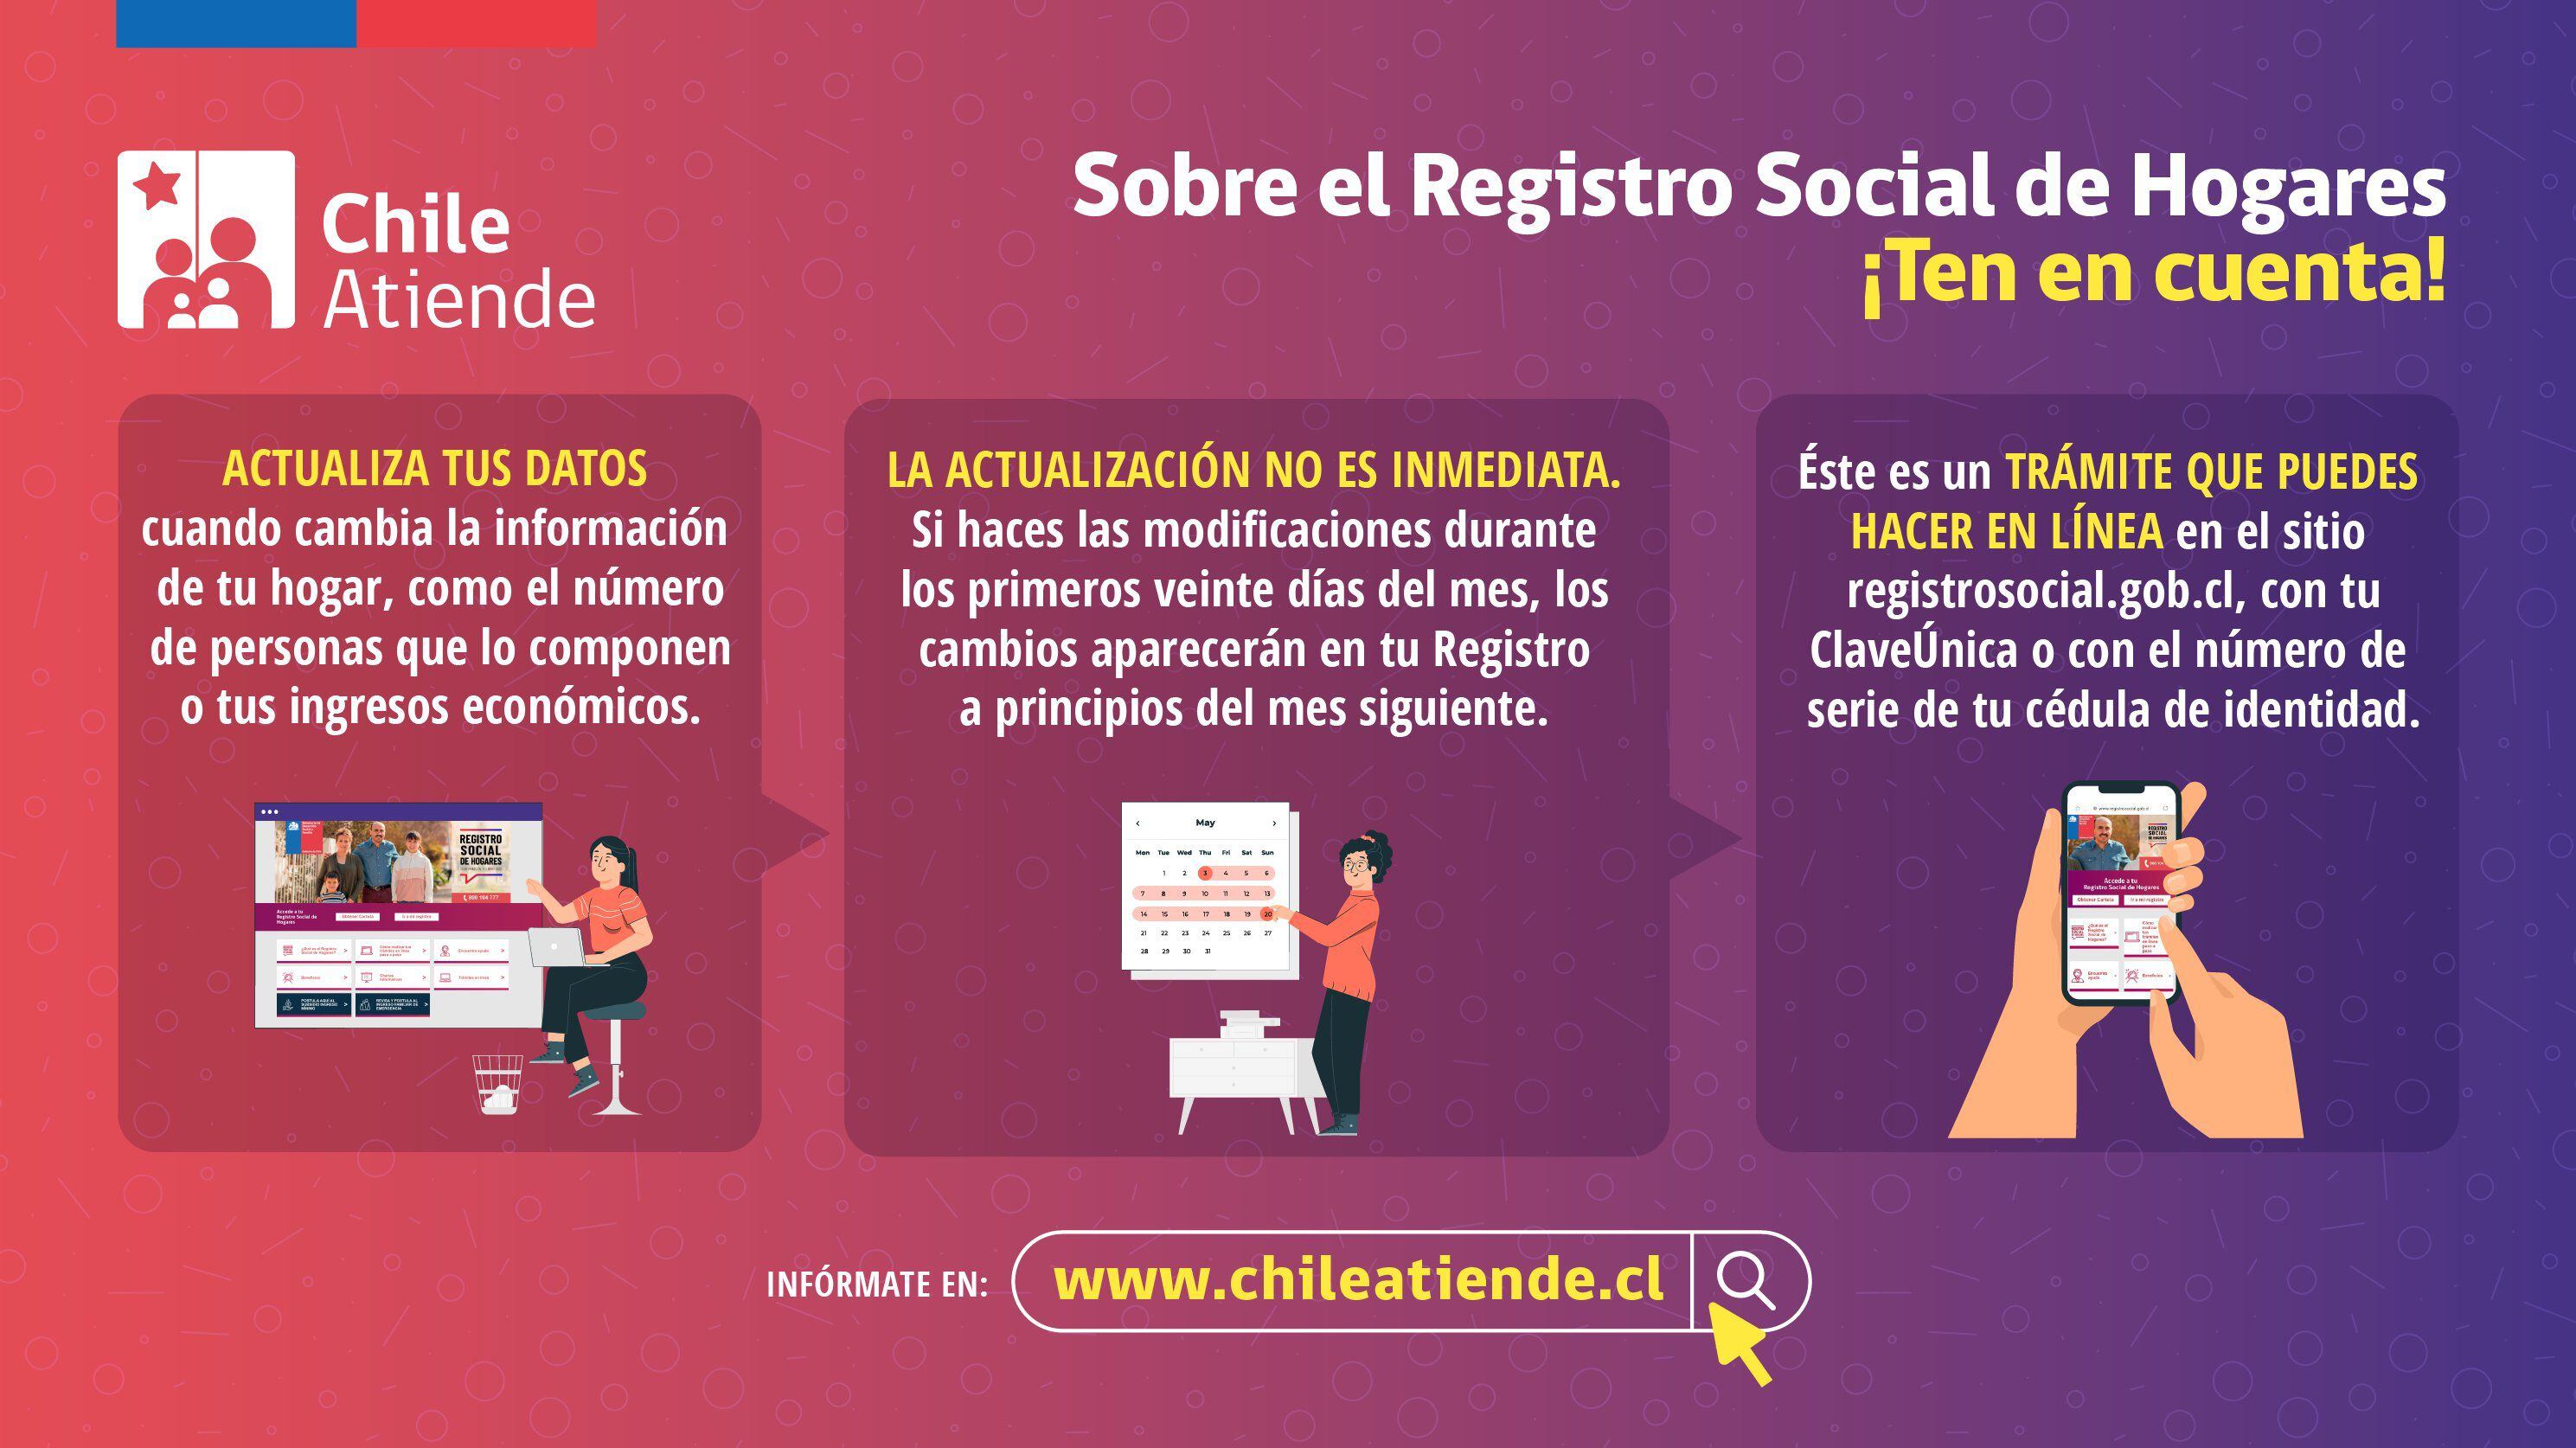 El Registro Social de Hogares es administrado por el Ministerio de Desarrollo Social y Familia.